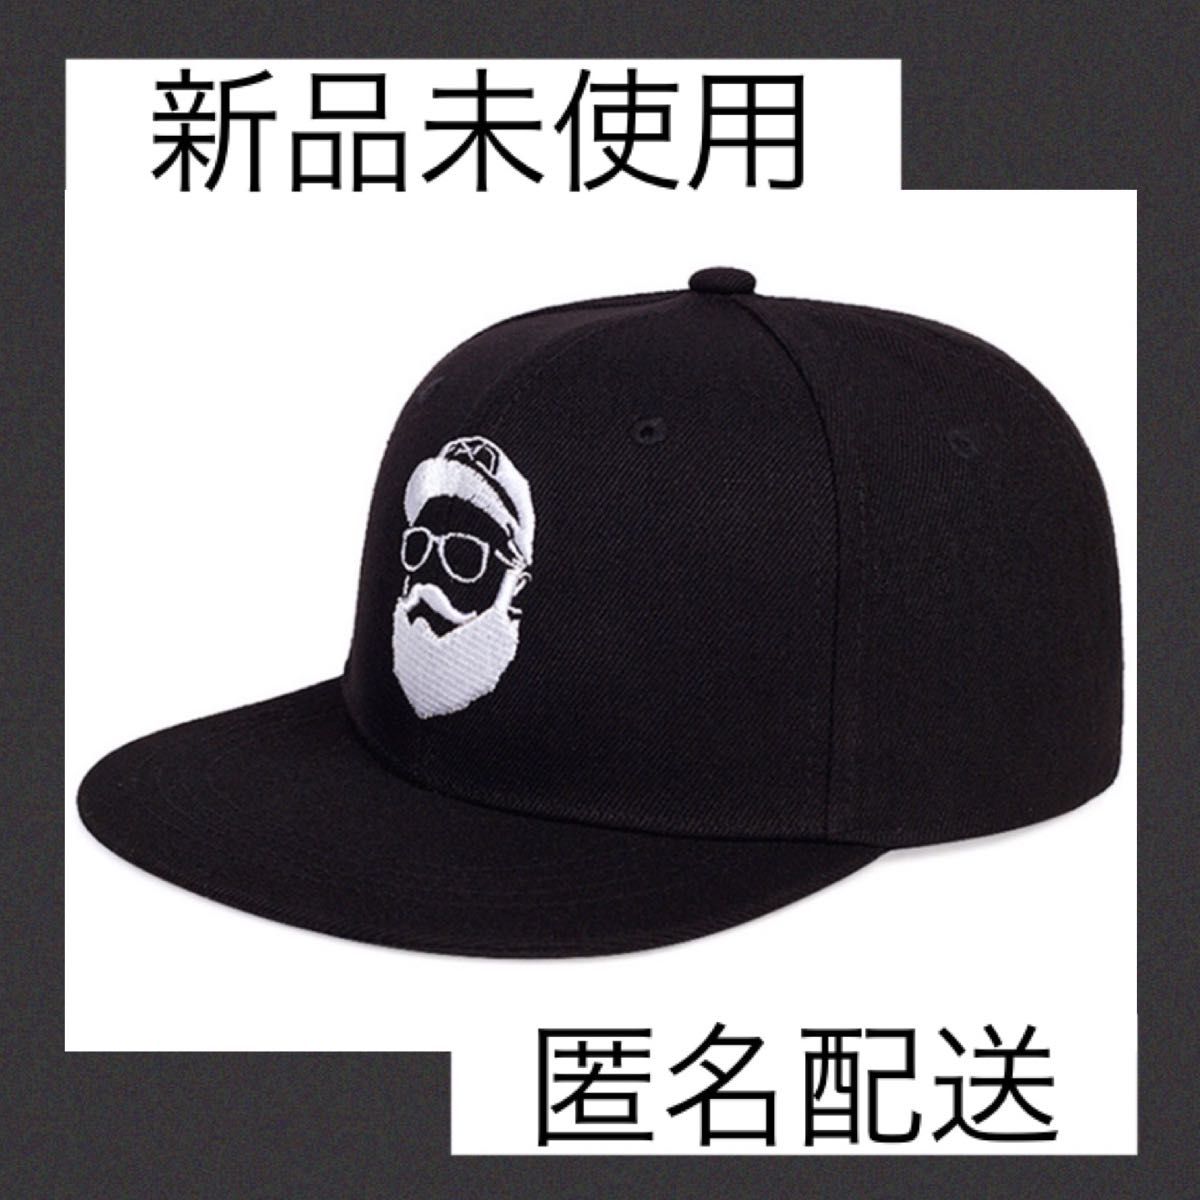 キャップ 帽子 ブラック ロゴ おじさん 黒 韓国 - キャップ